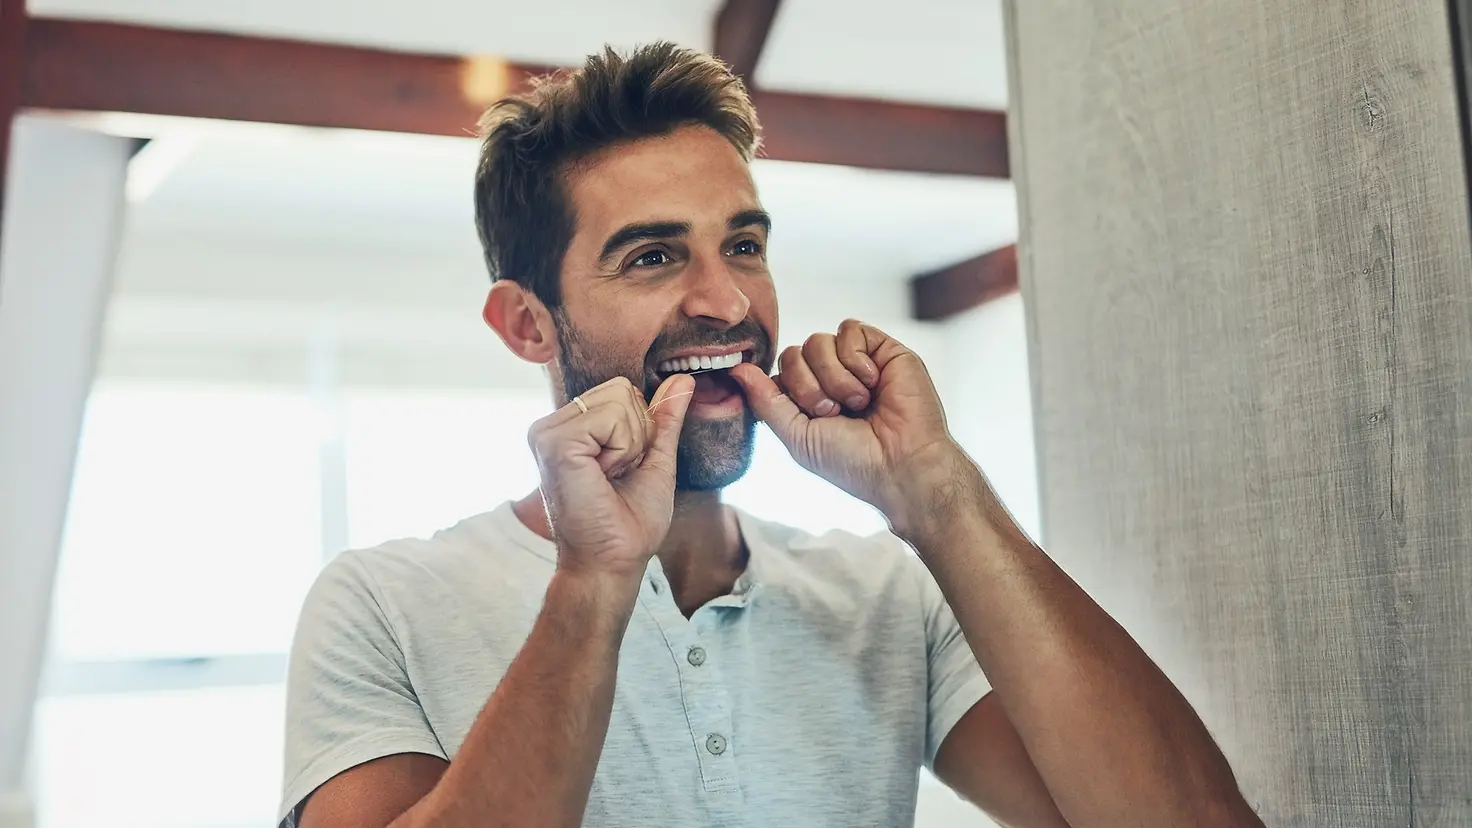 Ein Mann reinigt sich die Zähne mit Zahnseide